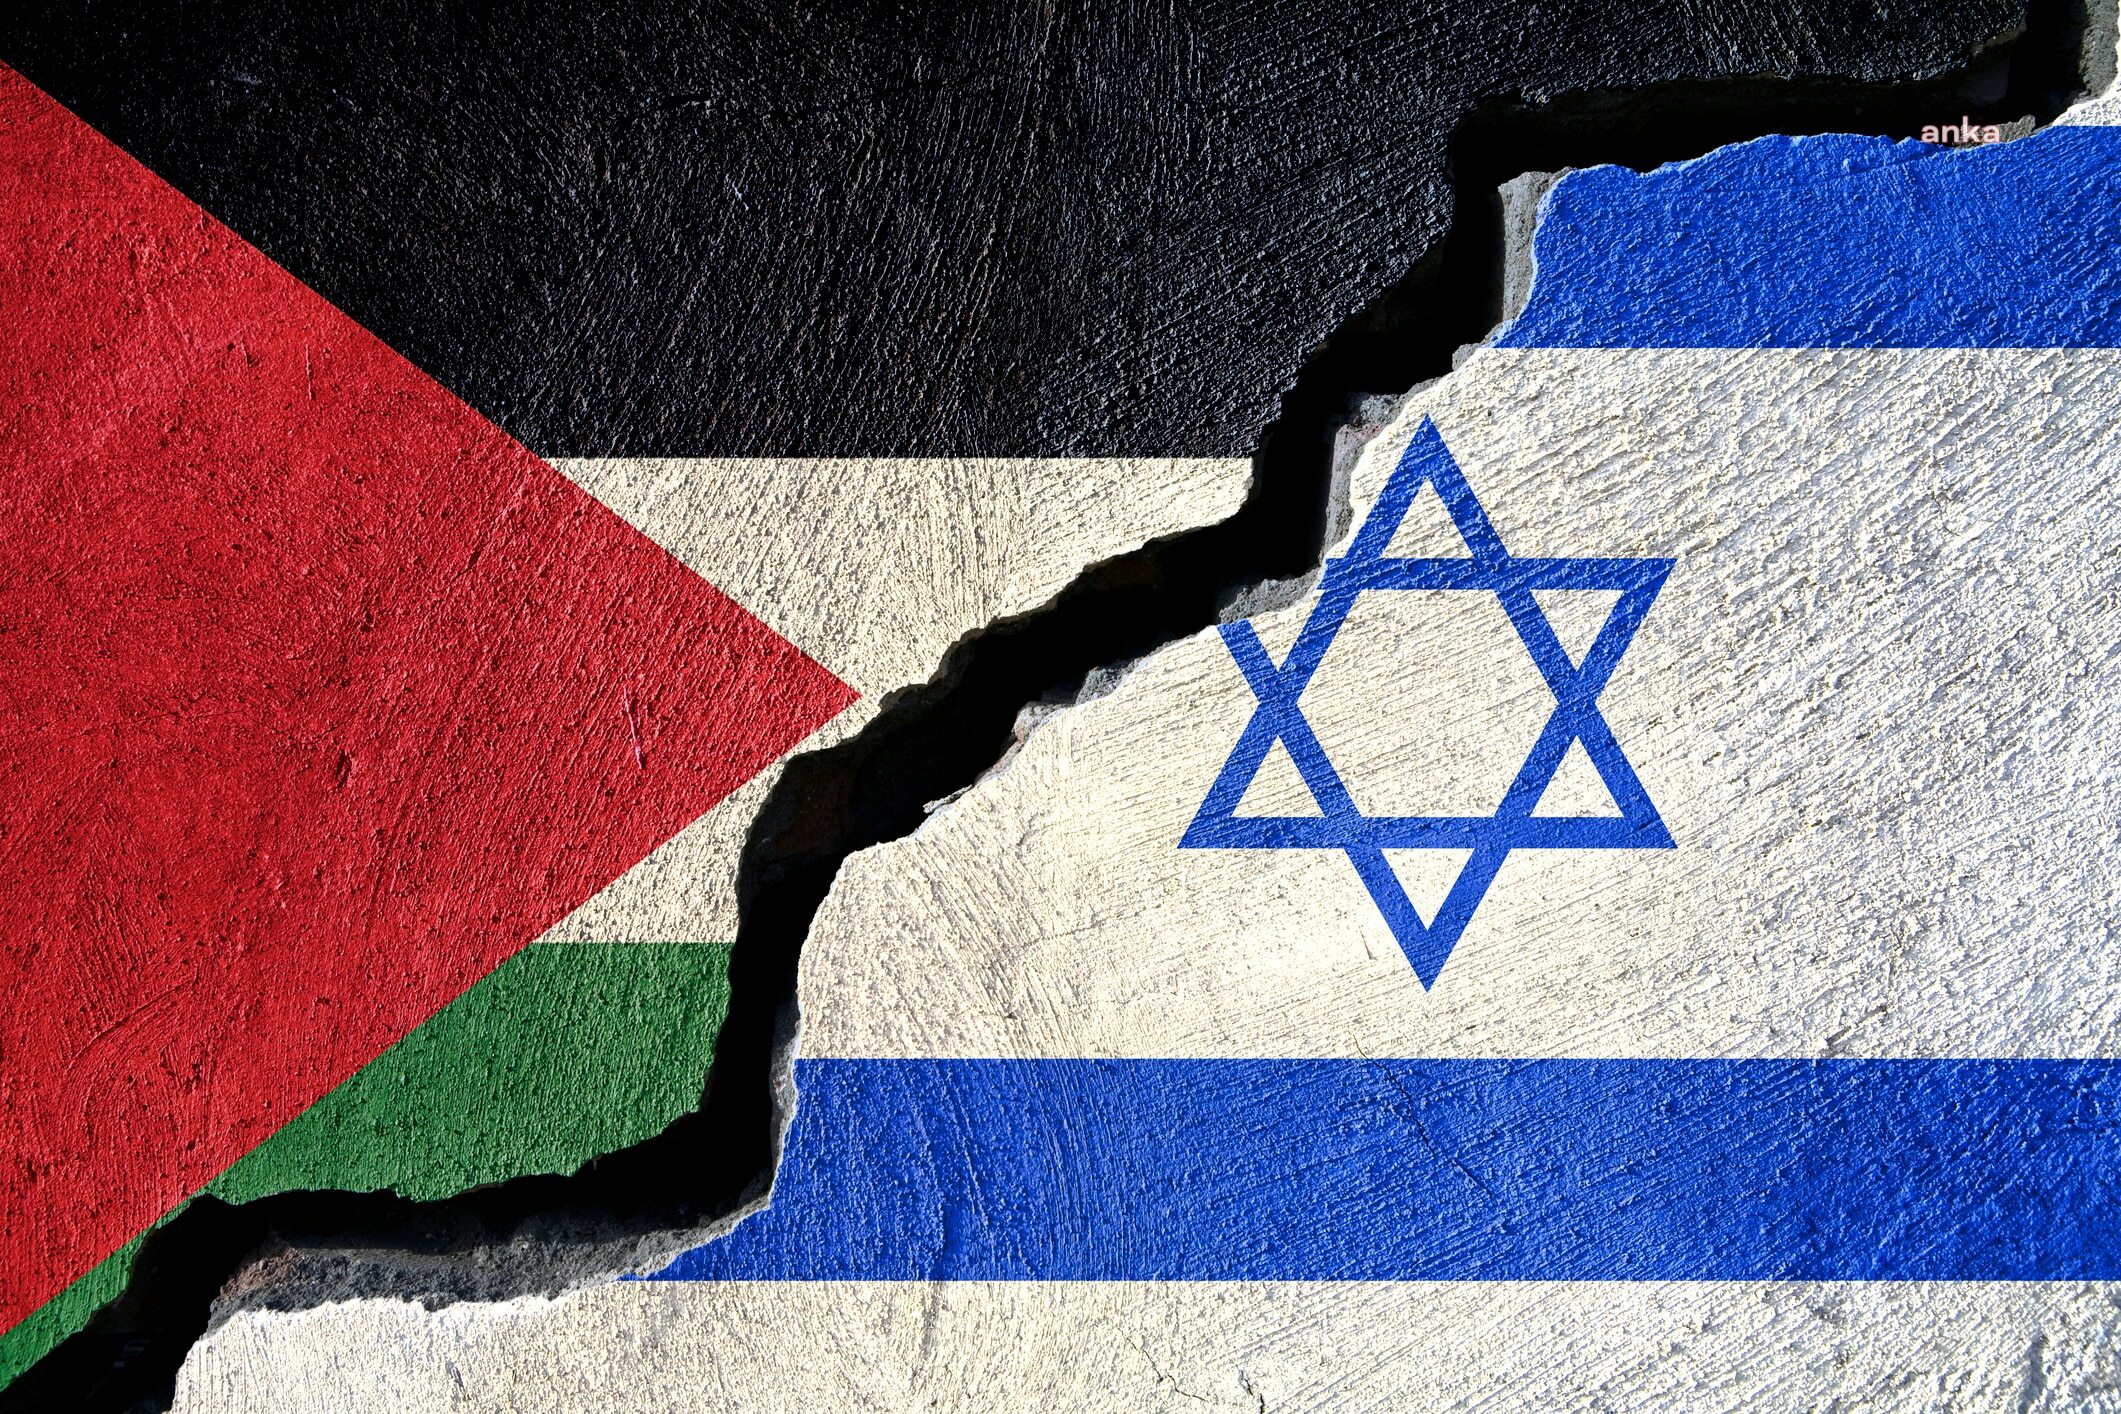 İsrailli Analist: Anlaşmak İçin Beklememeliyiz